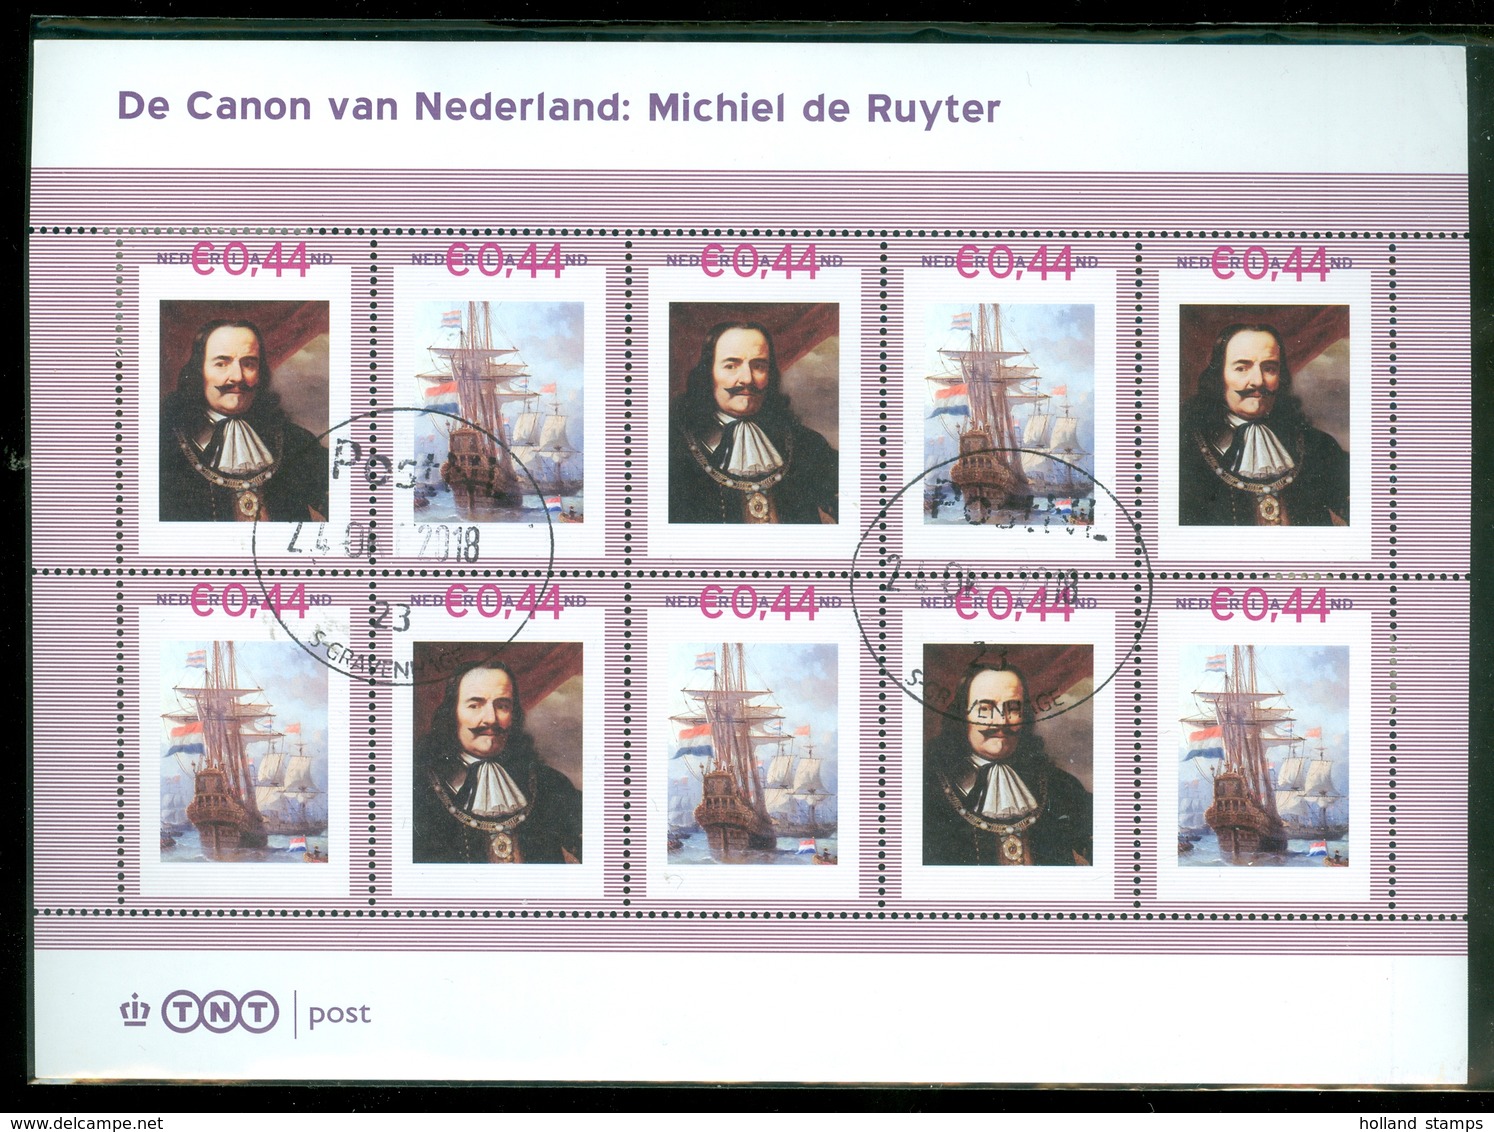 De Canon Van Nederland * PERSOOONLIJKE POSTZEGELS * MICHIEL DE RUYTER * BLOK BLOC BLOCK * POSTFRIS GESTEMPELD (129) - Timbres Personnalisés